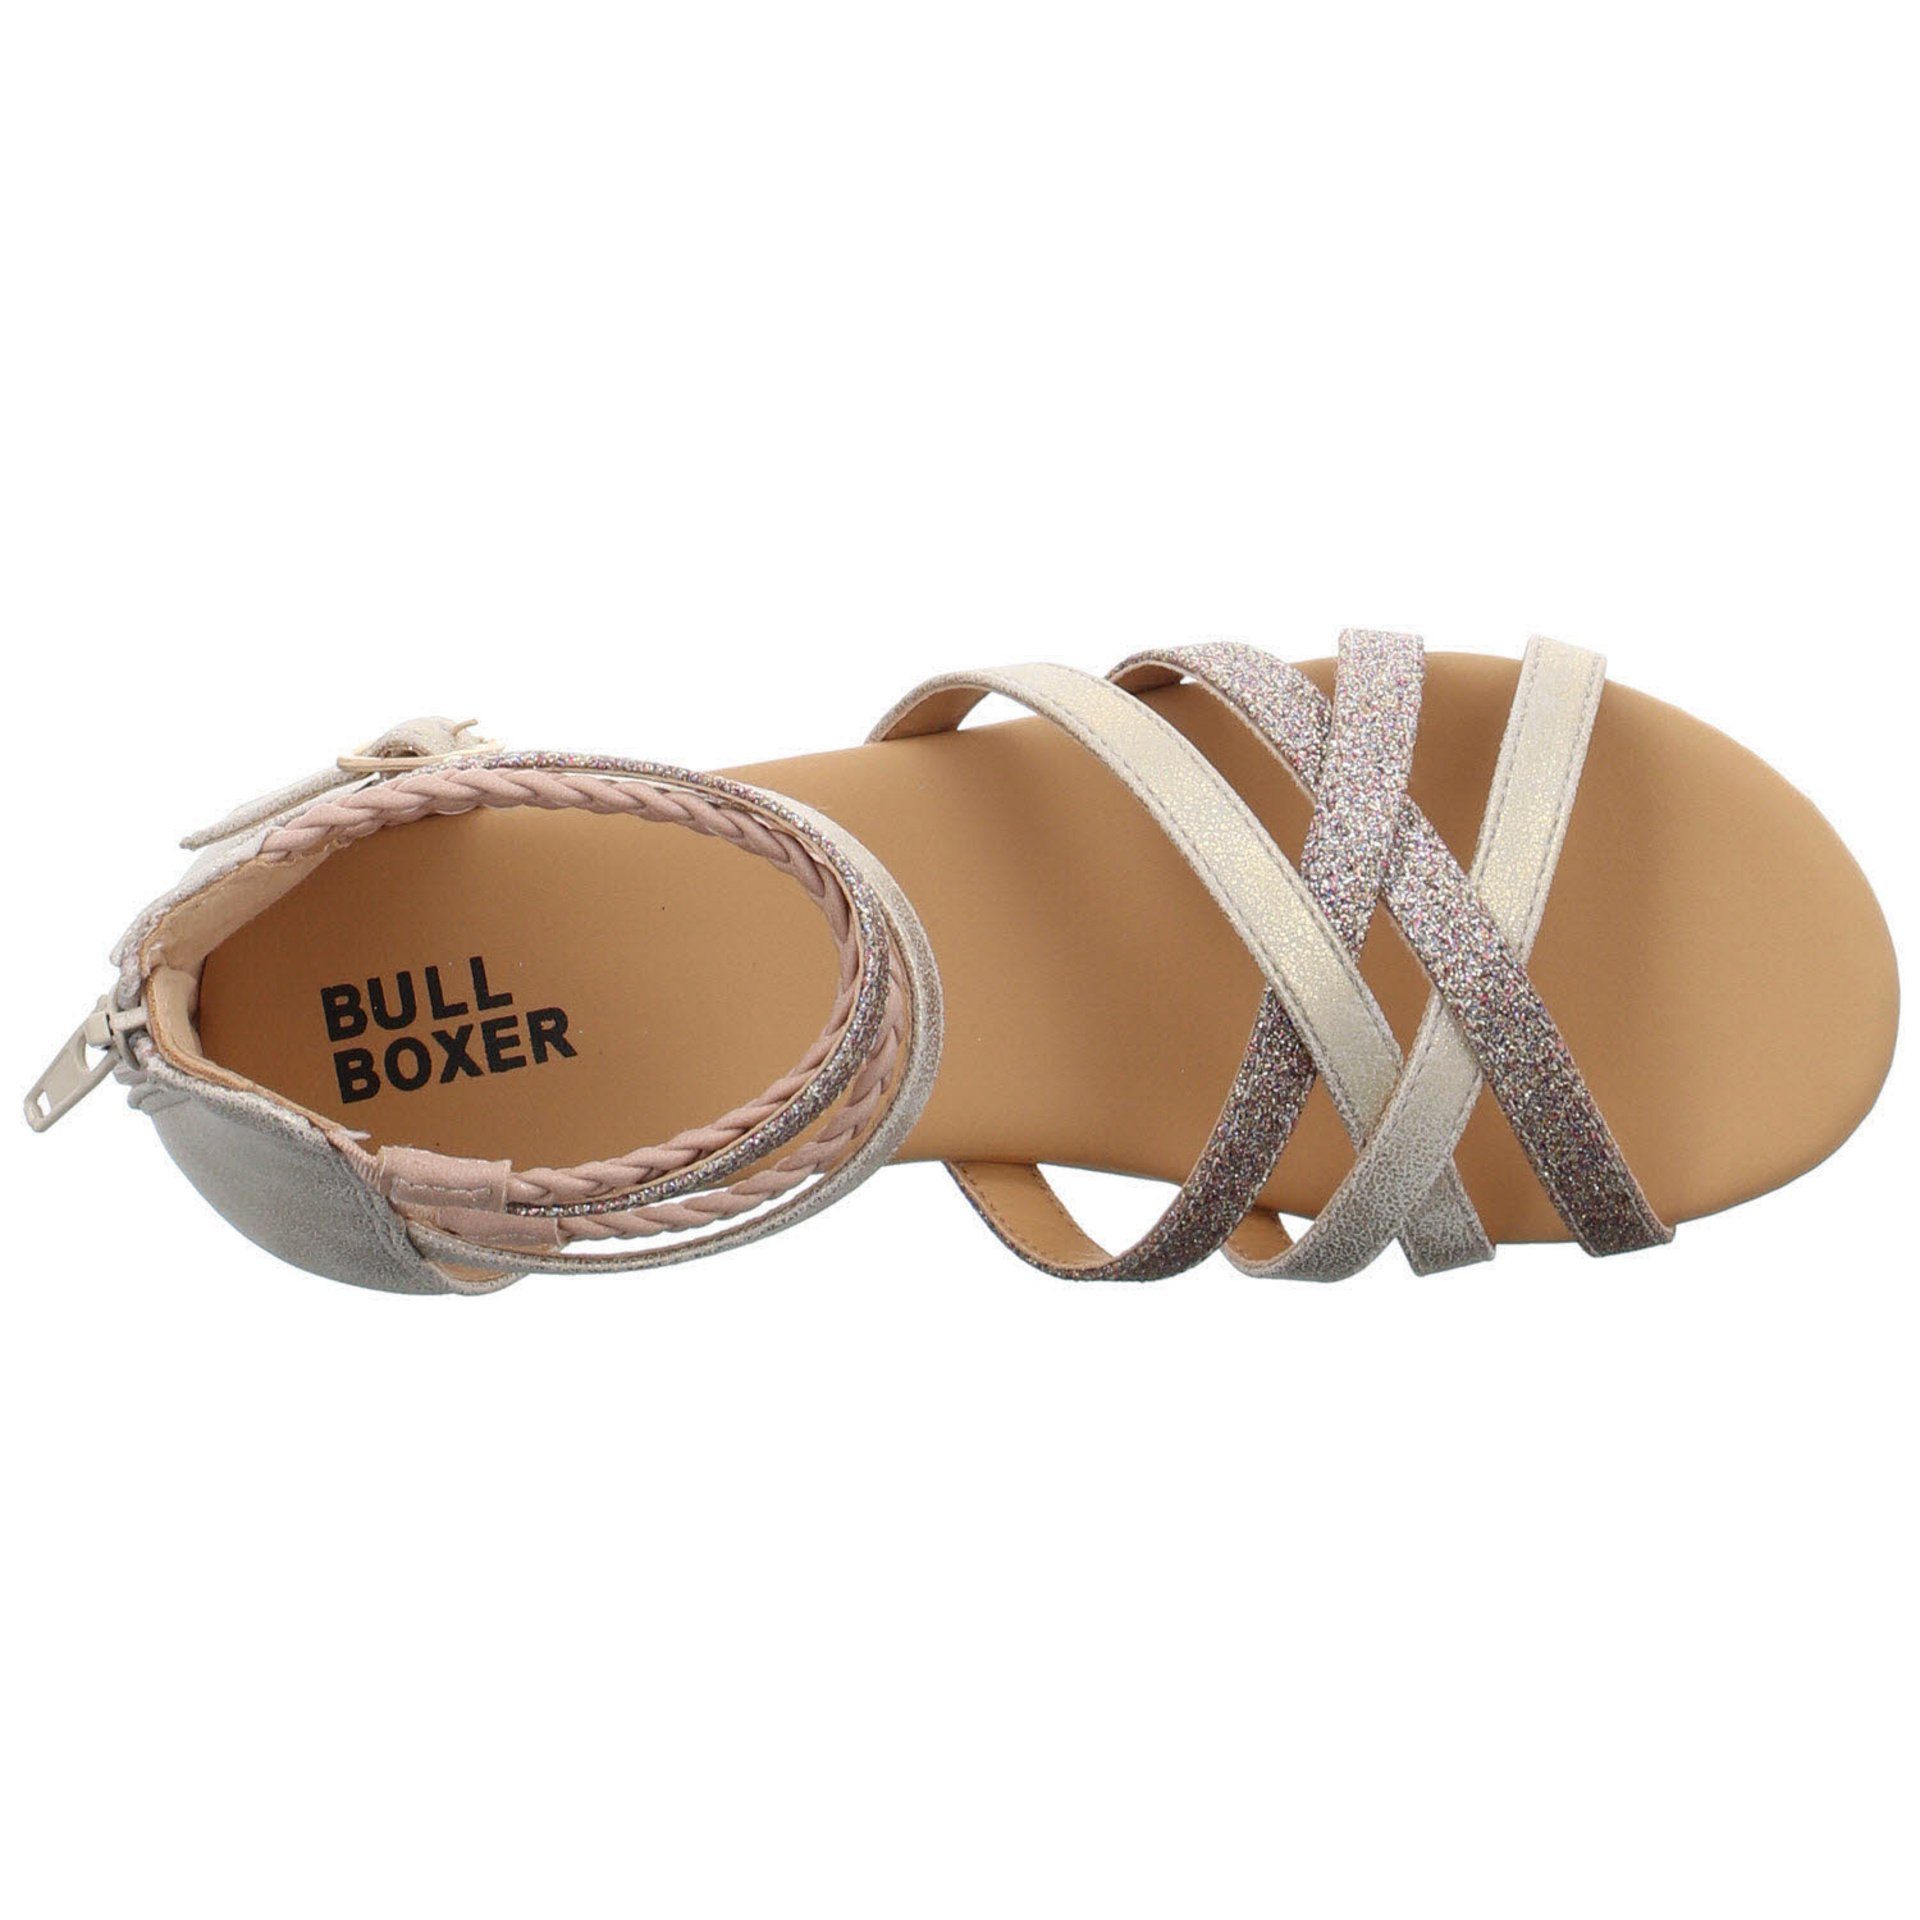 Bullboxer Sandale Mädchen Sandalen rot+lila Kinderschuhe Lederkombination Schuhe Sandale hell